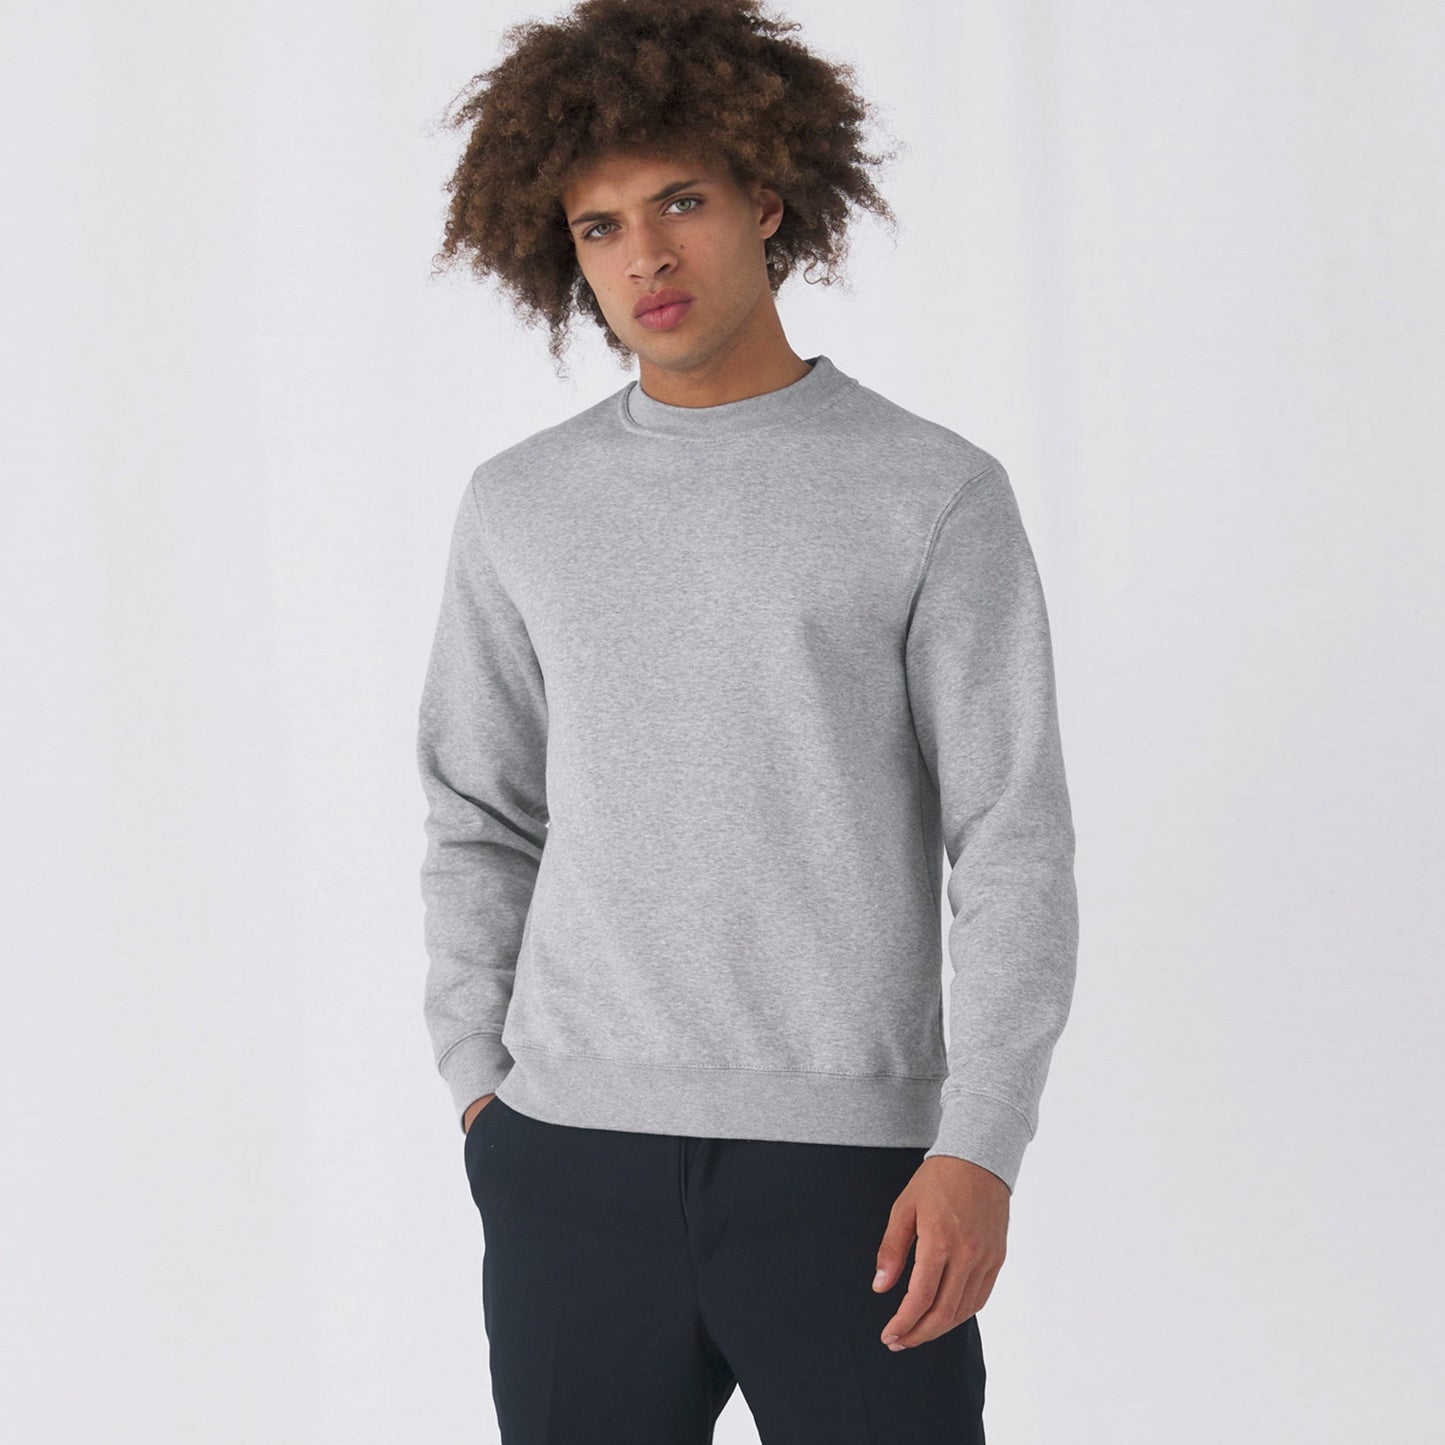 Premium Sweater (Men/ Unisex) (Muster)